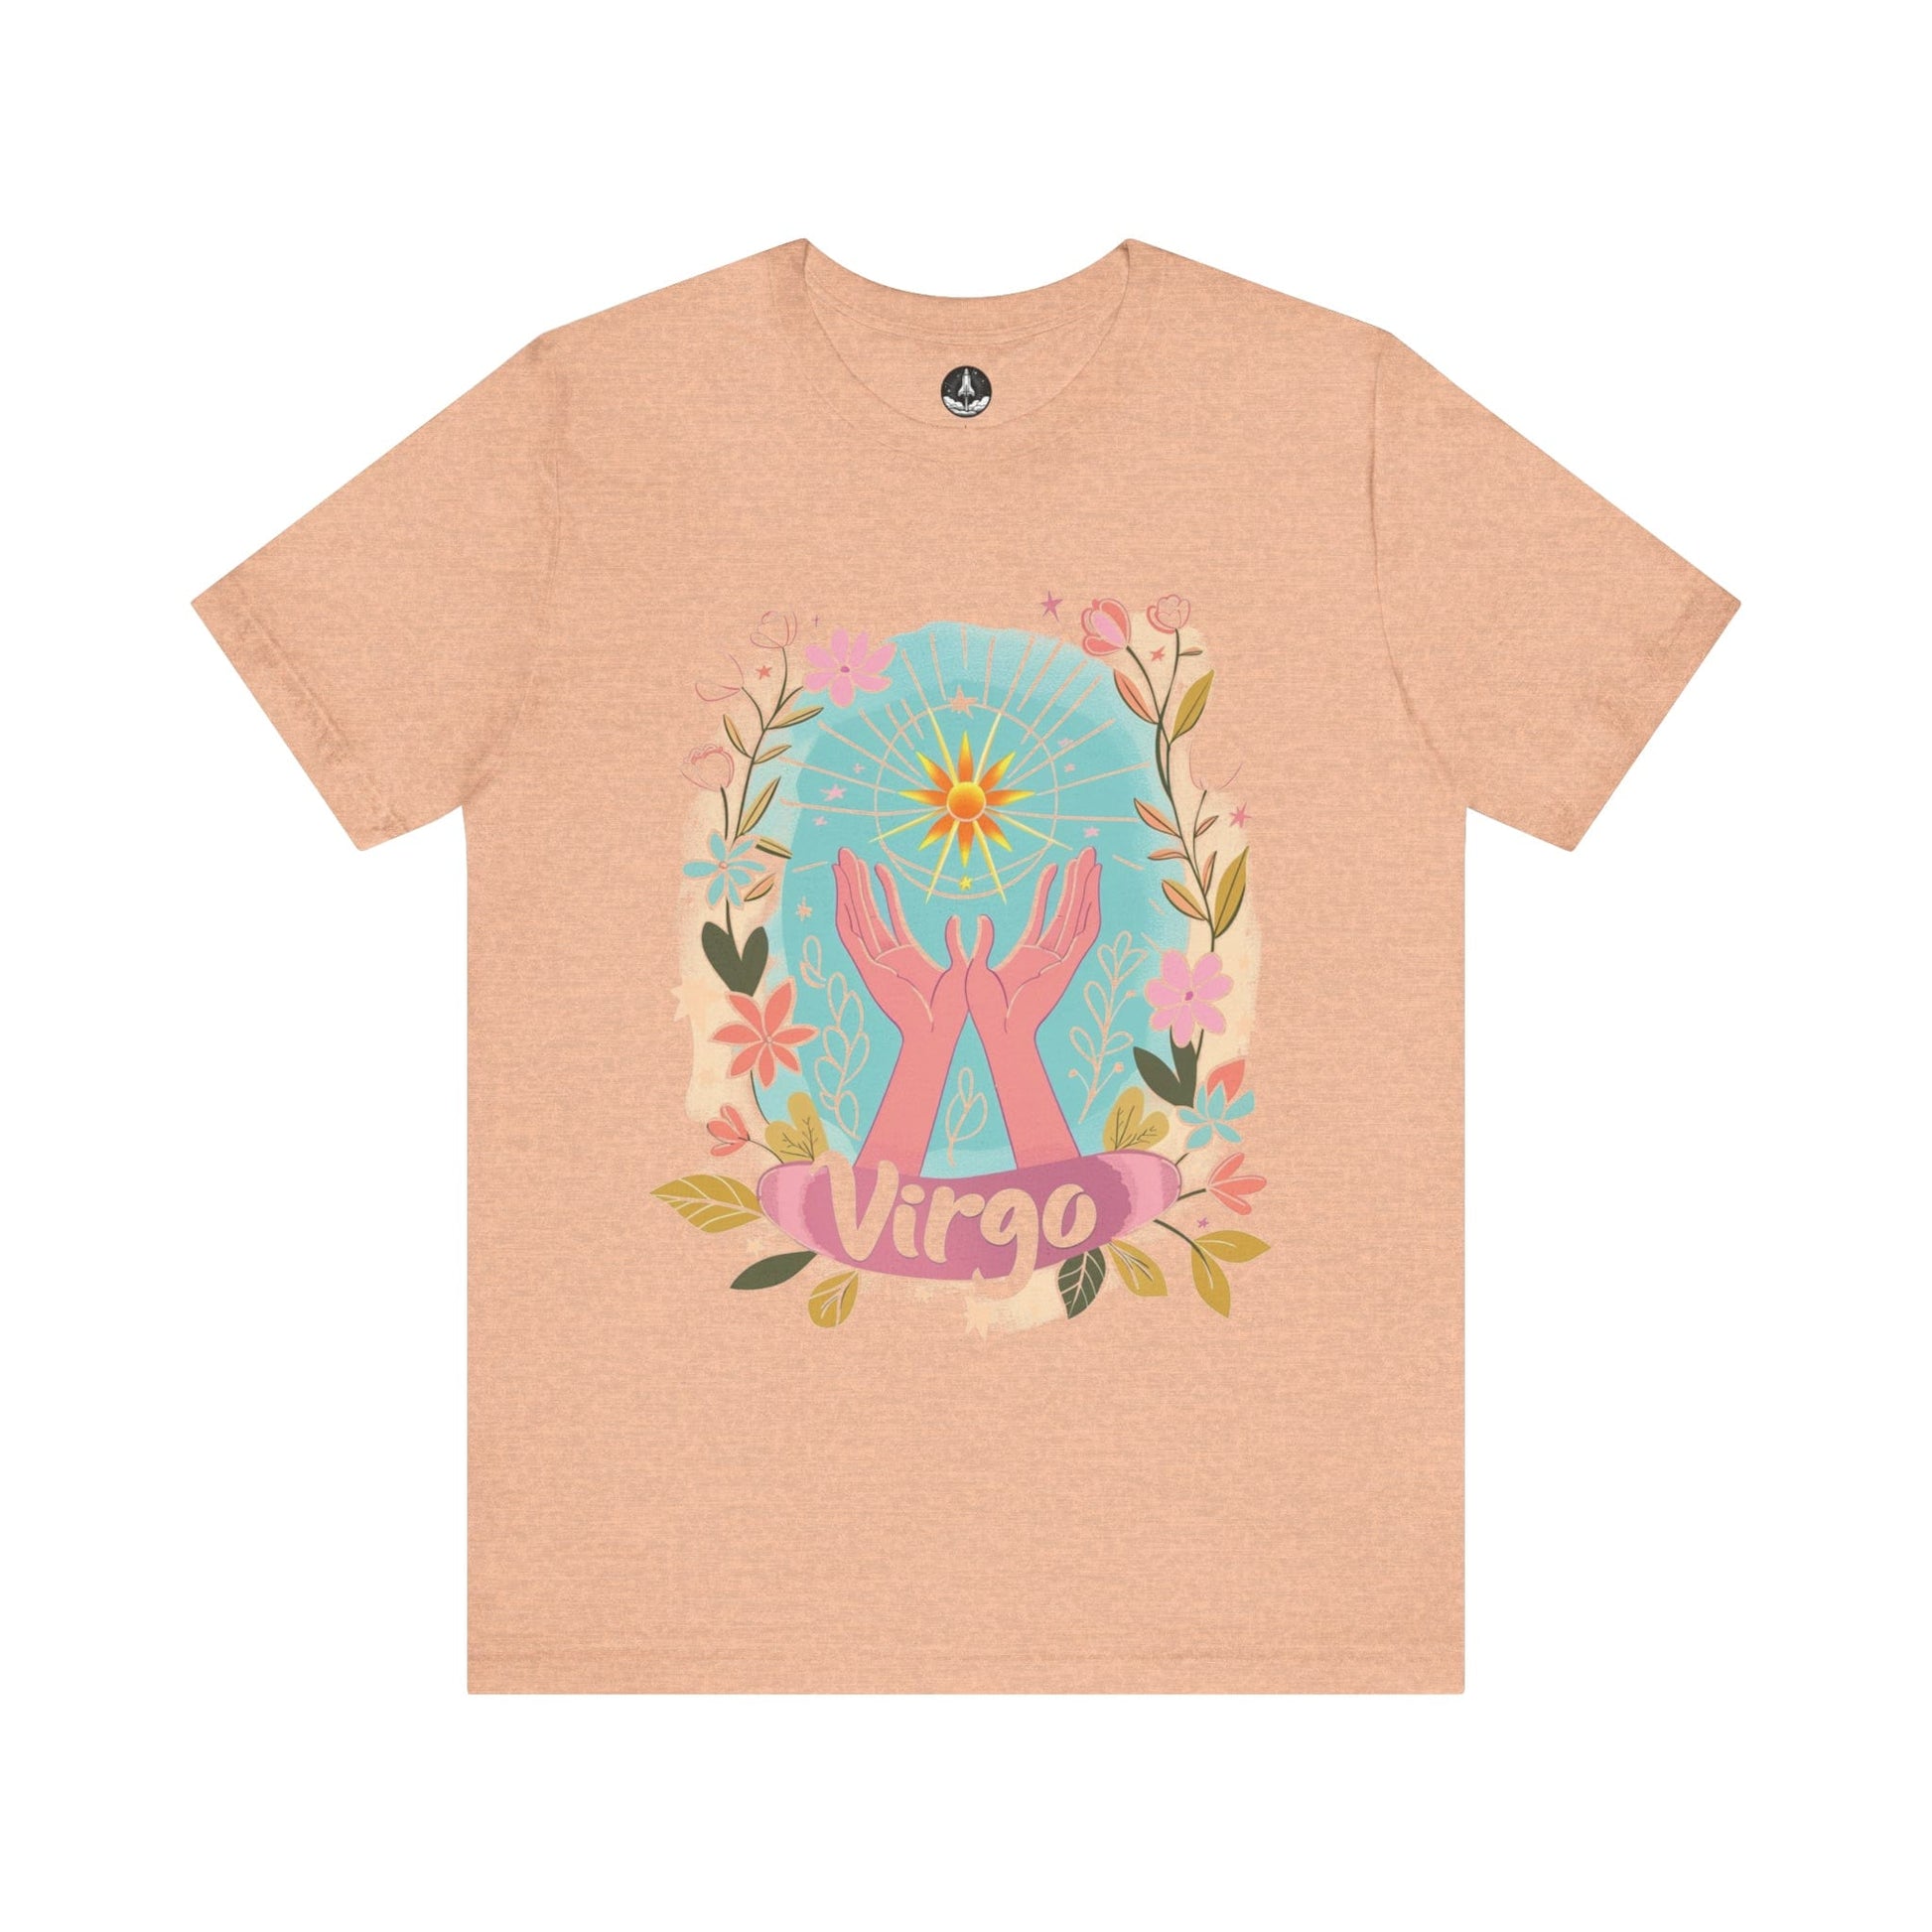 T-Shirt Heather Peach / S Virgo's Bloom TShirt: Nurturing Nature's Beauty